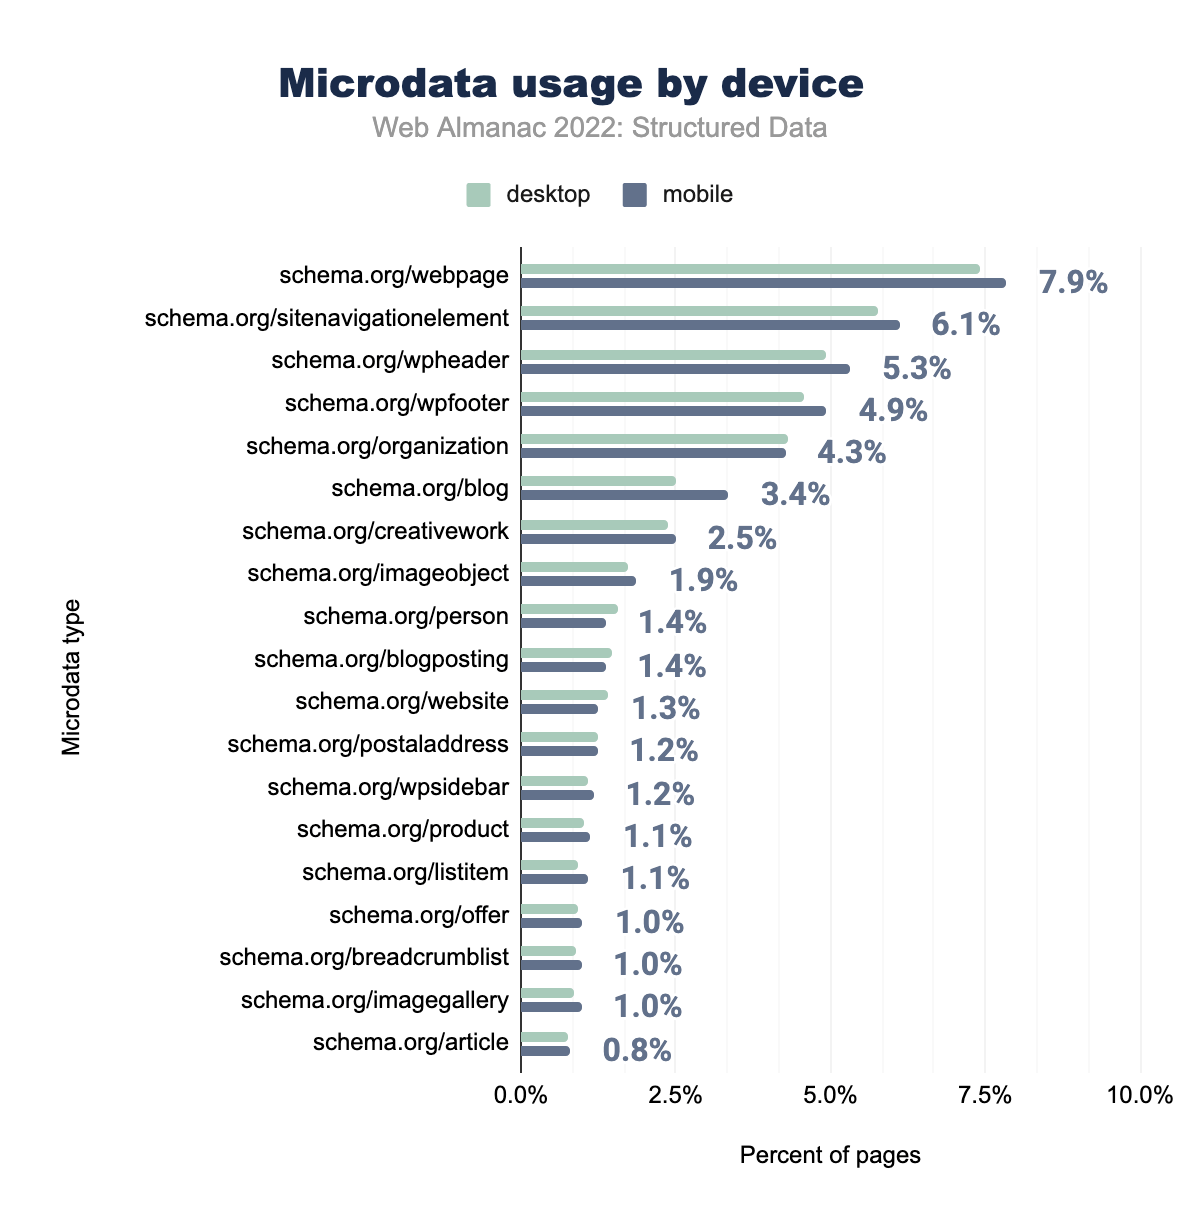 Utilizzo dei Microdata per dispositivo